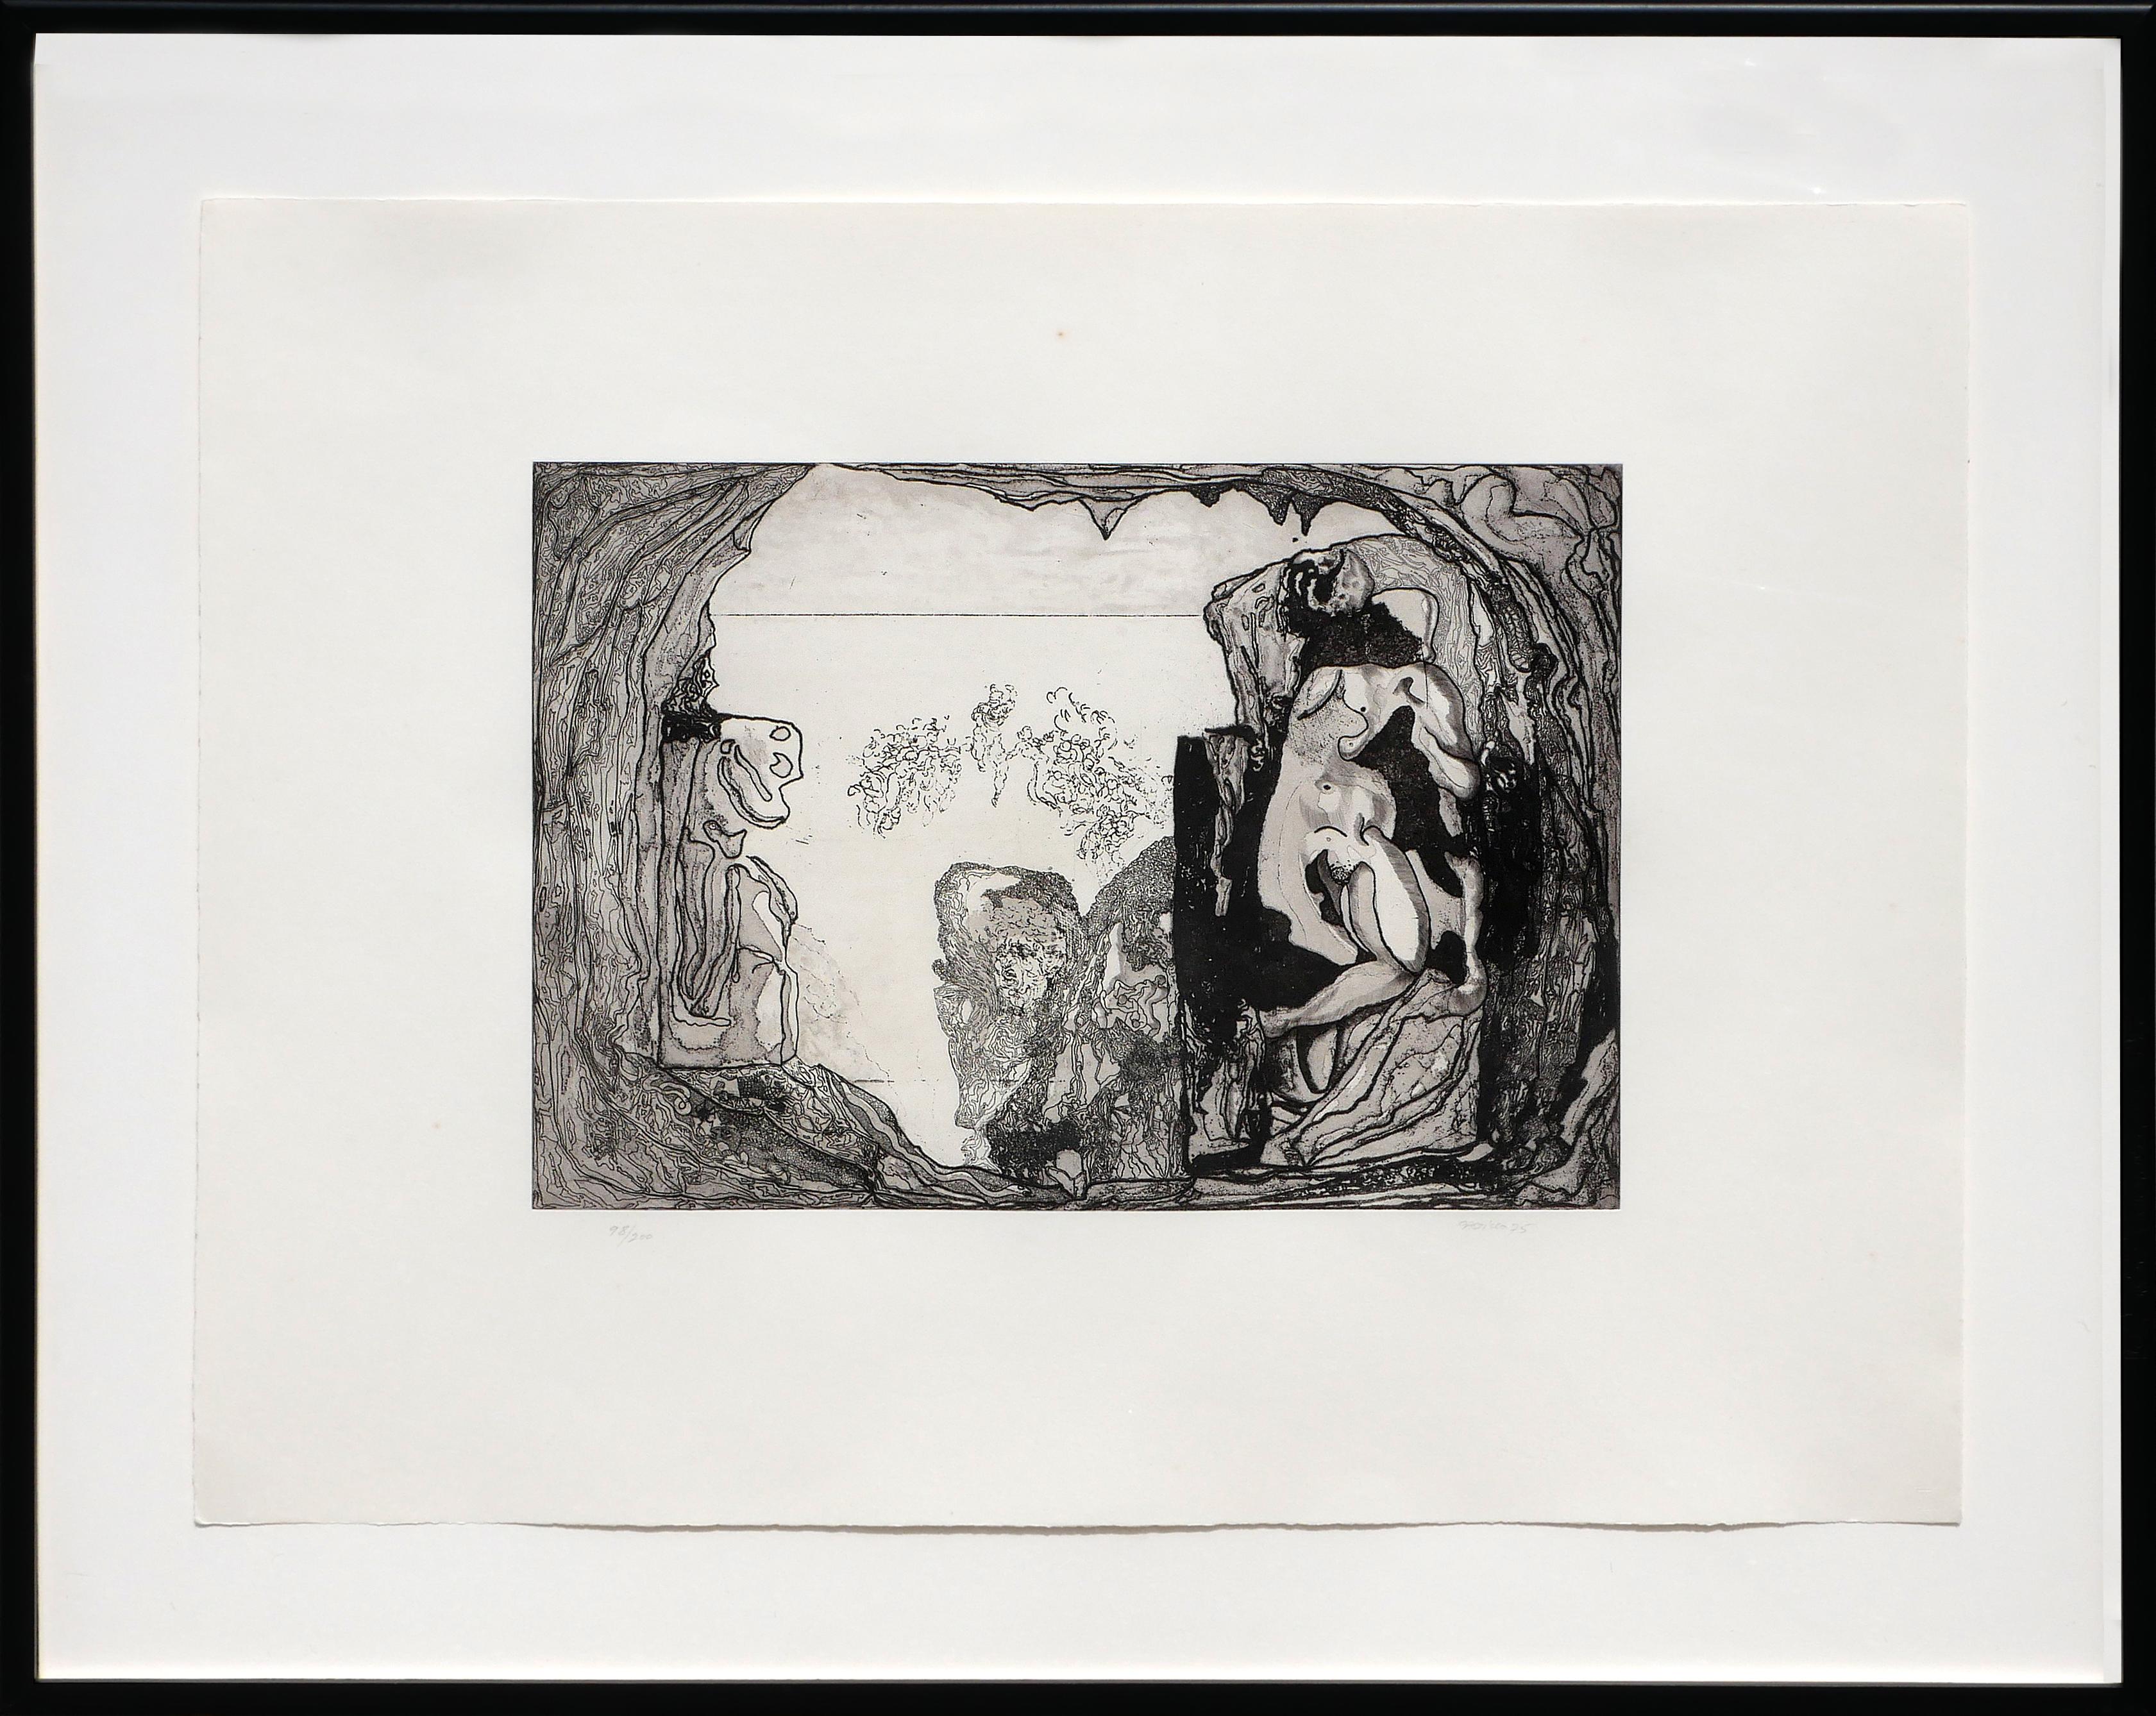 Jorge Castillo Abstract Print – Abstrakte schwarze und weiße figurative Radierung, Auflage 98/200